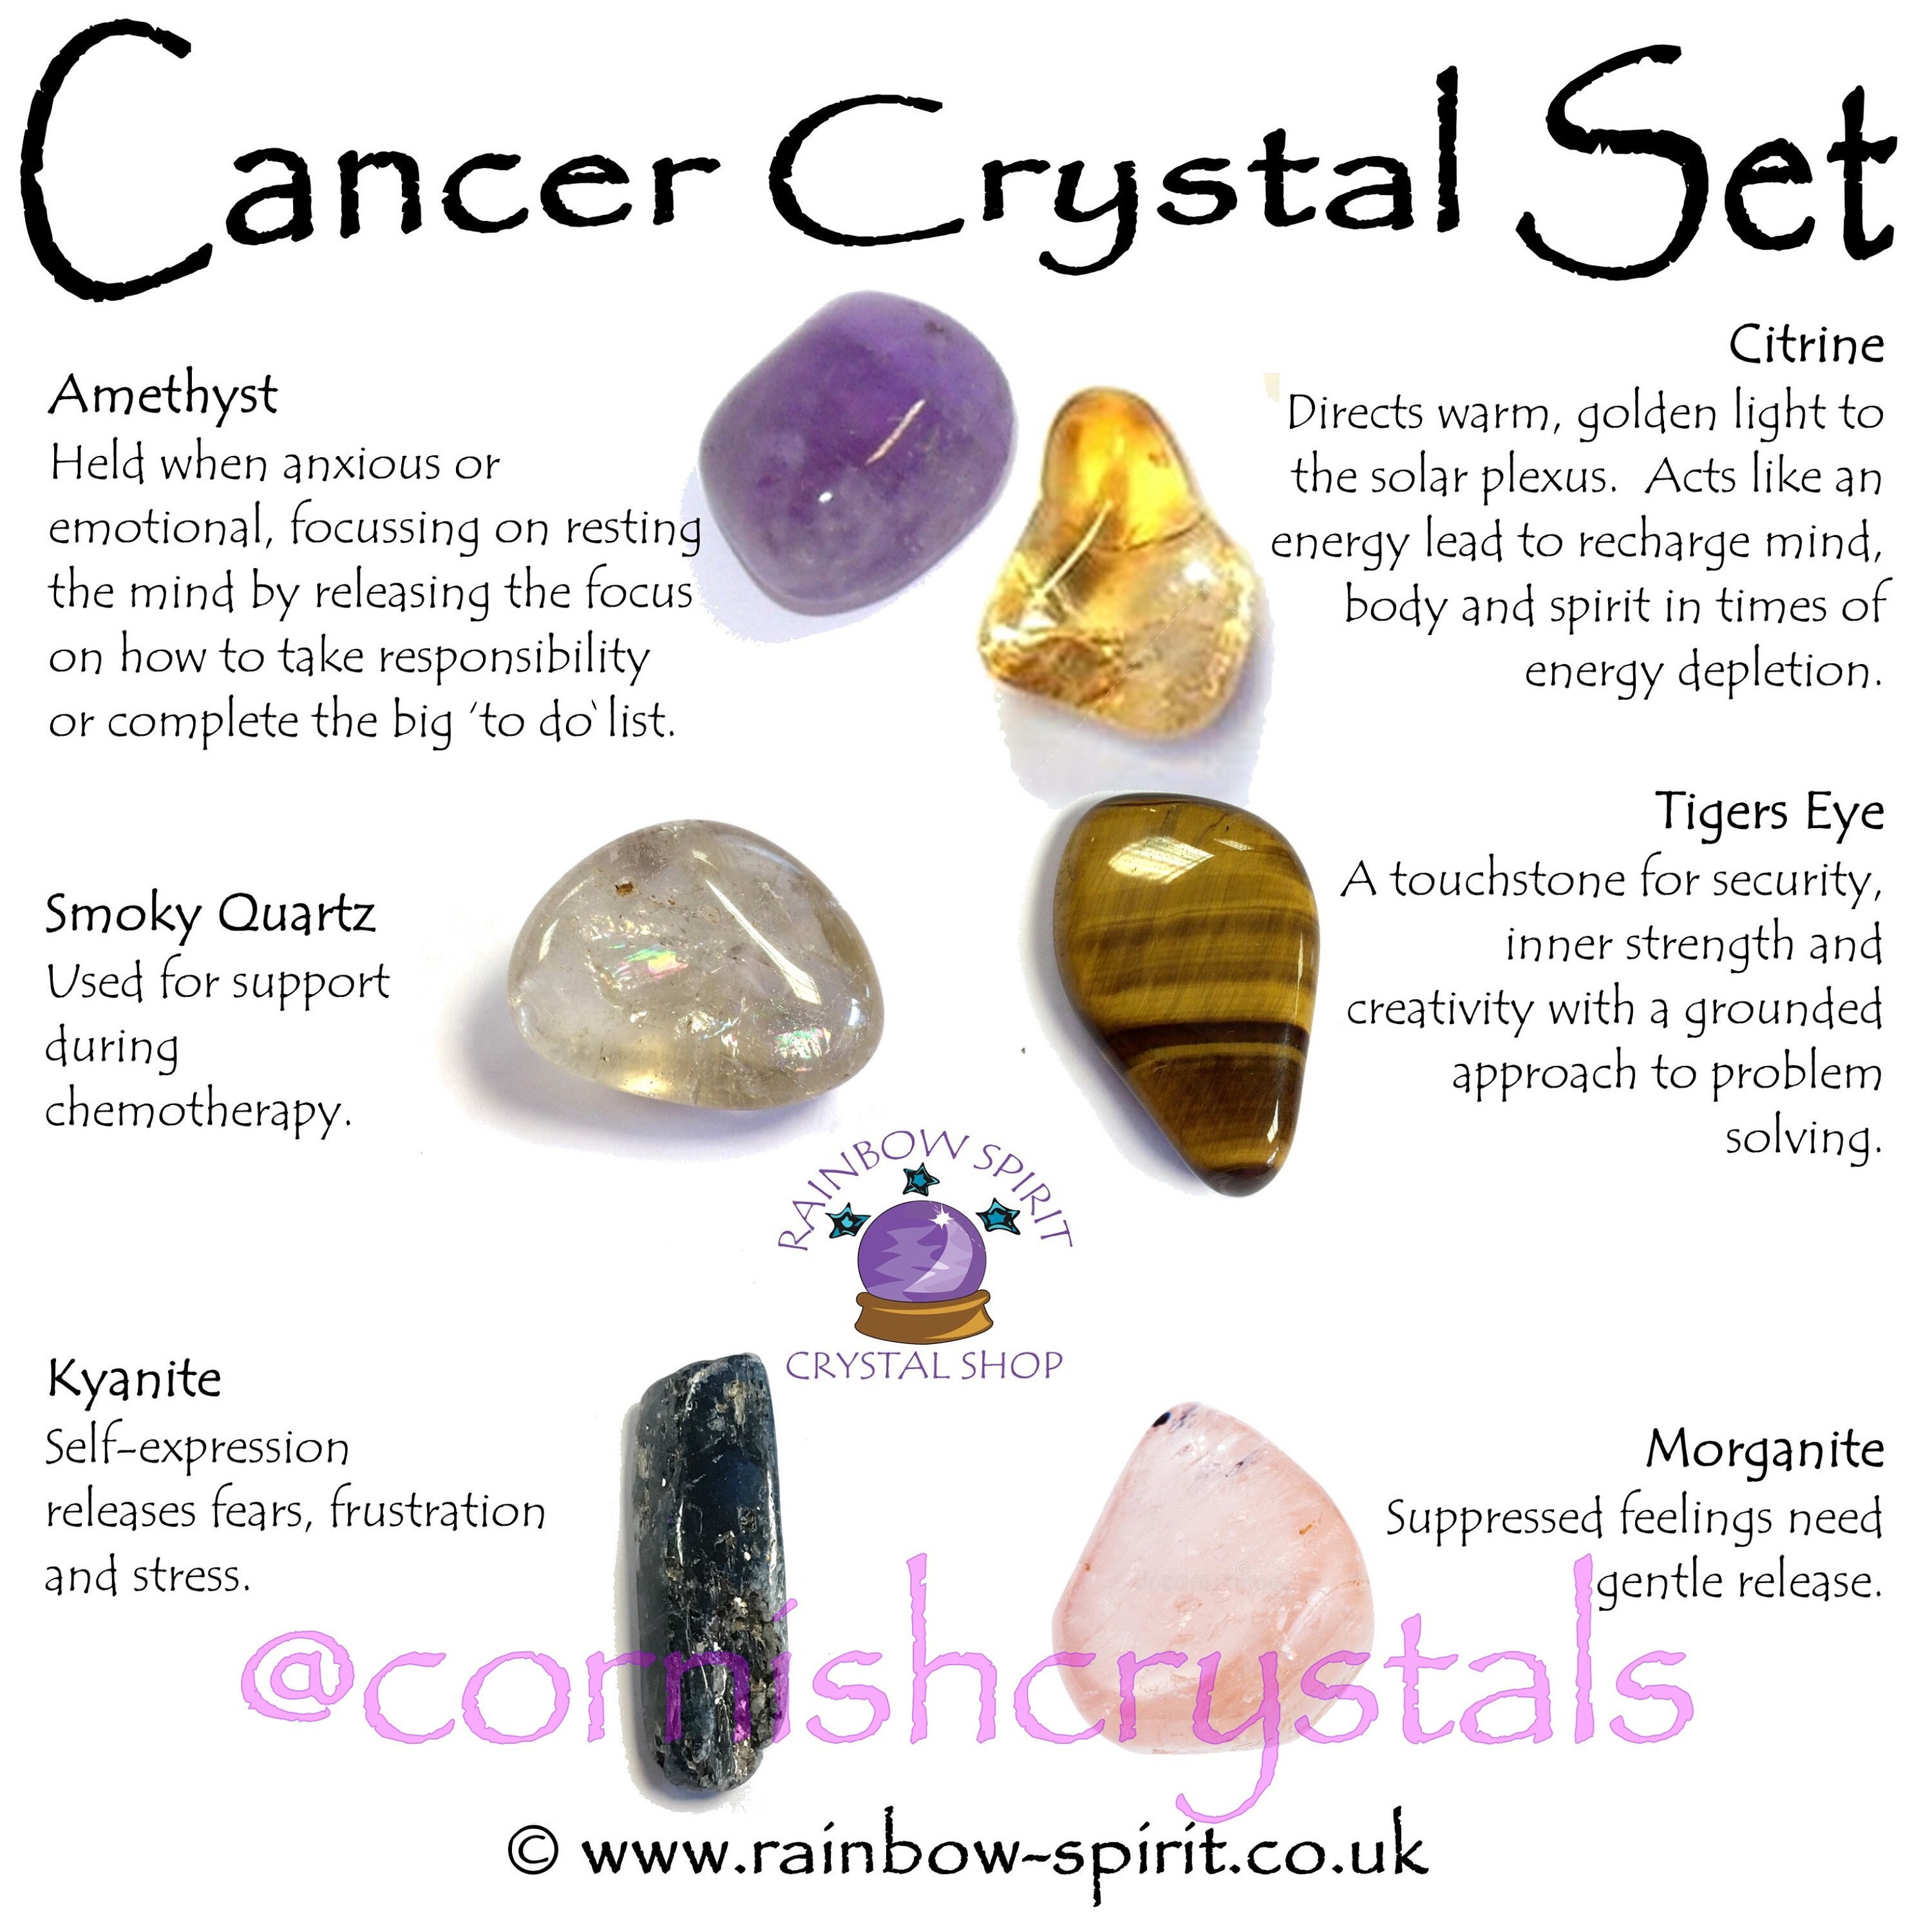 Spirit Jewel  Magical Healing Crystals & Spiritual Jewellery Shop UK